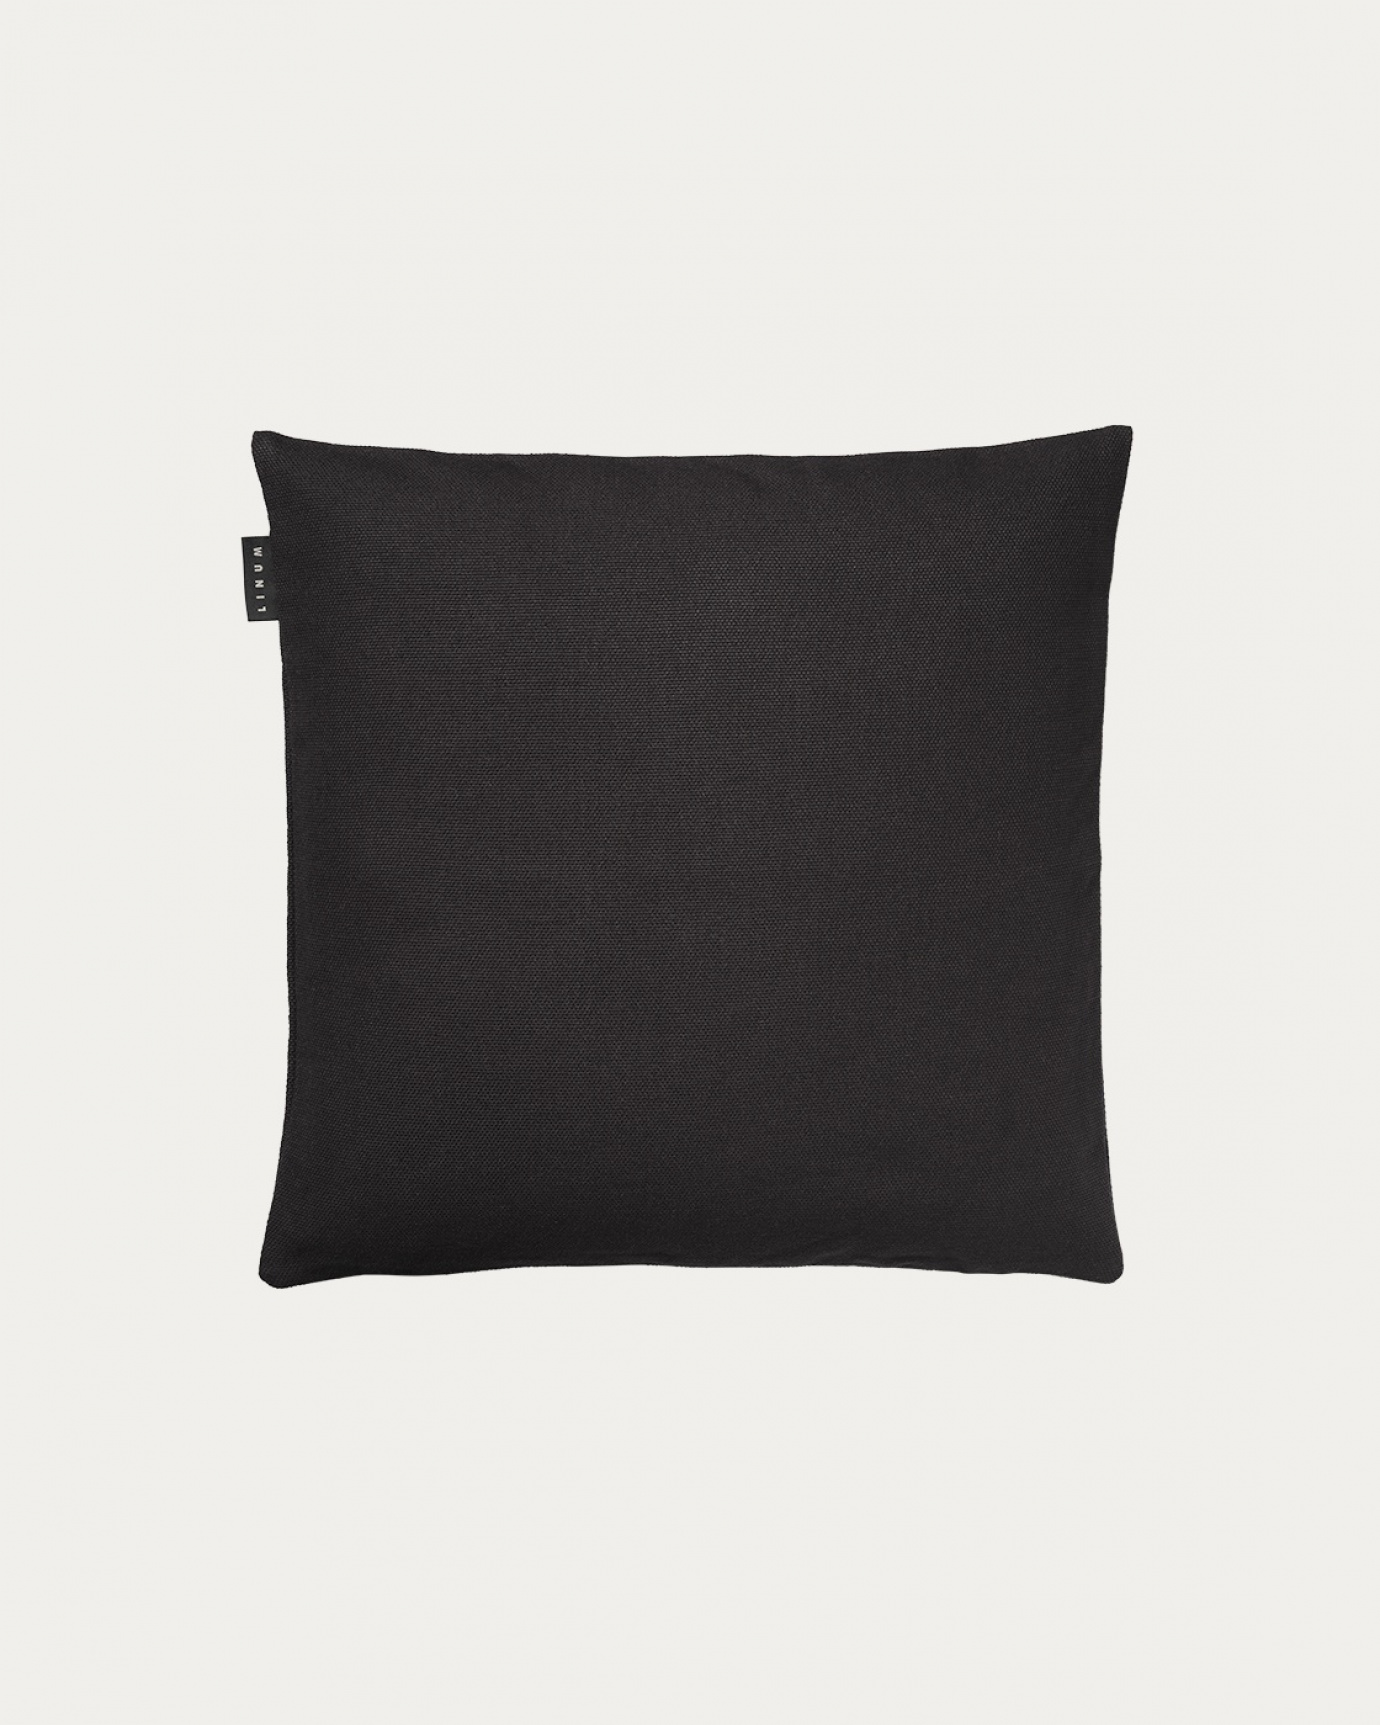 Produktbild schwarze melange PEPPER Kissenhülle aus weicher Baumwolle von LINUM DESIGN. Einfach zu waschen und langlebig für Generationen. Größe 40x40 cm.